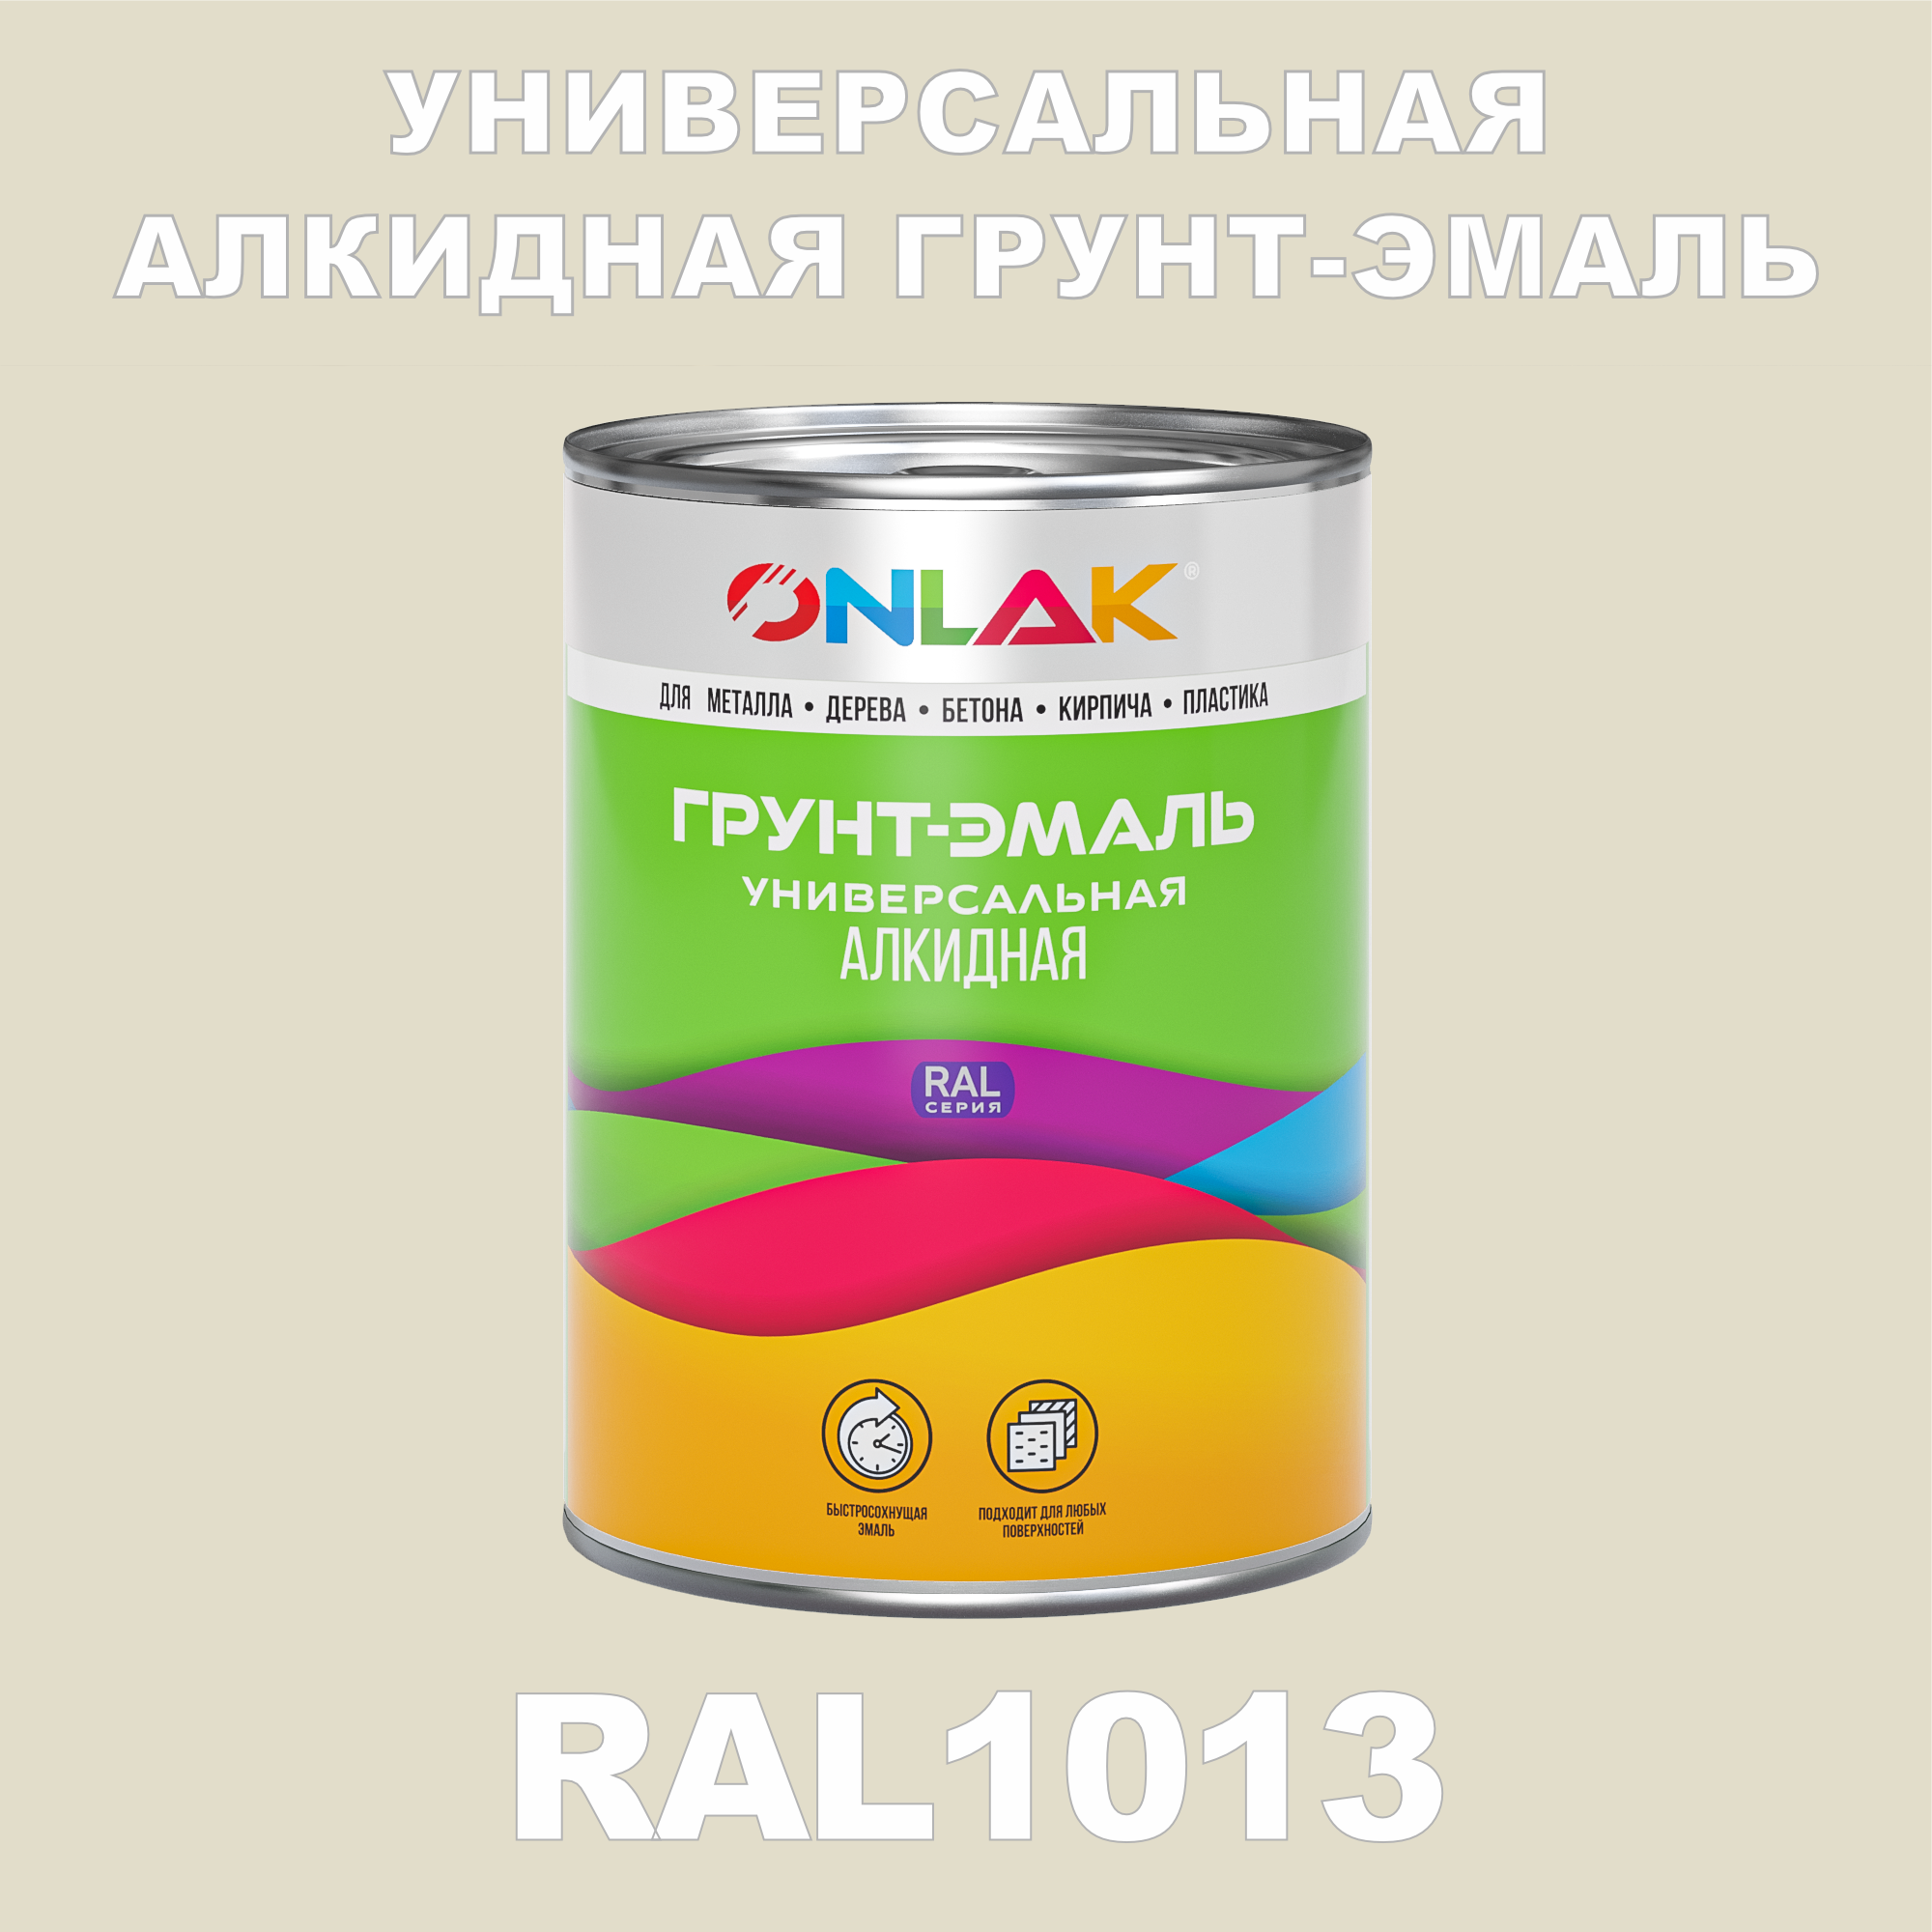 Грунт-эмаль ONLAK 1К RAL1013 антикоррозионная алкидная по металлу по ржавчине 1 кг грунт эмаль аэрозольная престиж 3в1 алкидная коричневая ral 8017 425 мл 0 425 кг